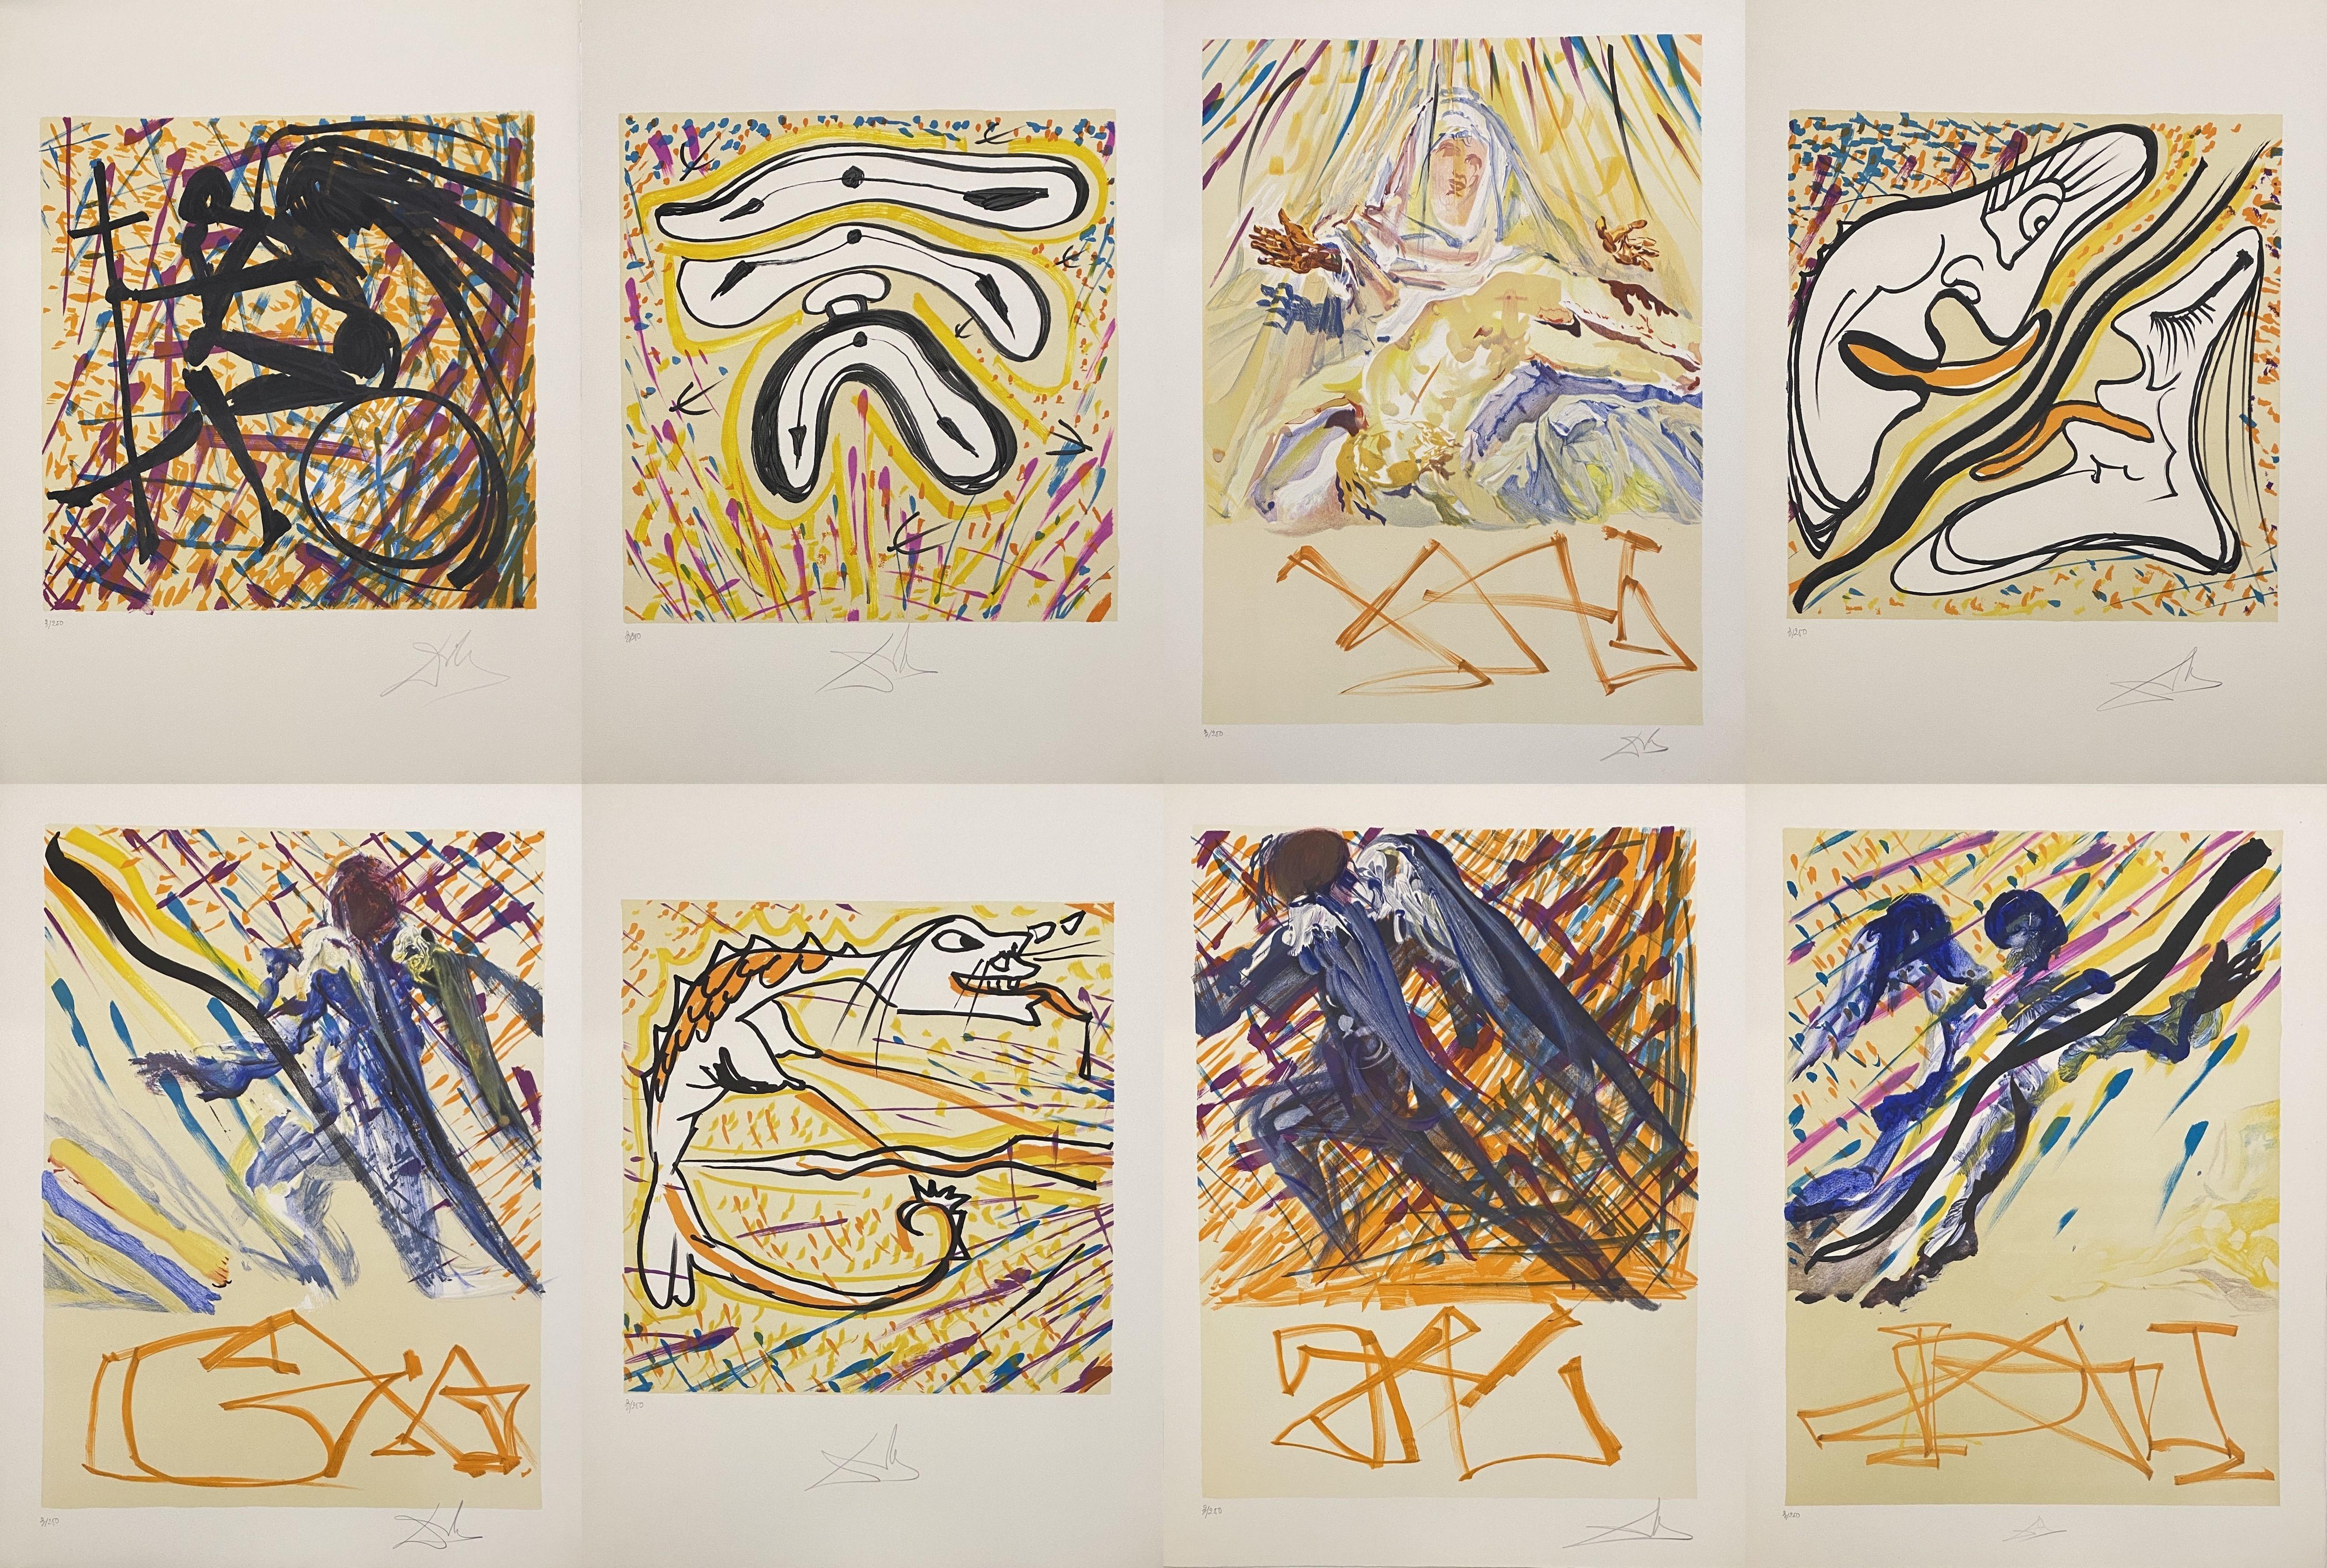 Vitraux - Ensemble complet de 24 lithographies signées à la main et/250 dans un coffret (feuille 74-5) - Print de Salvador Dalí